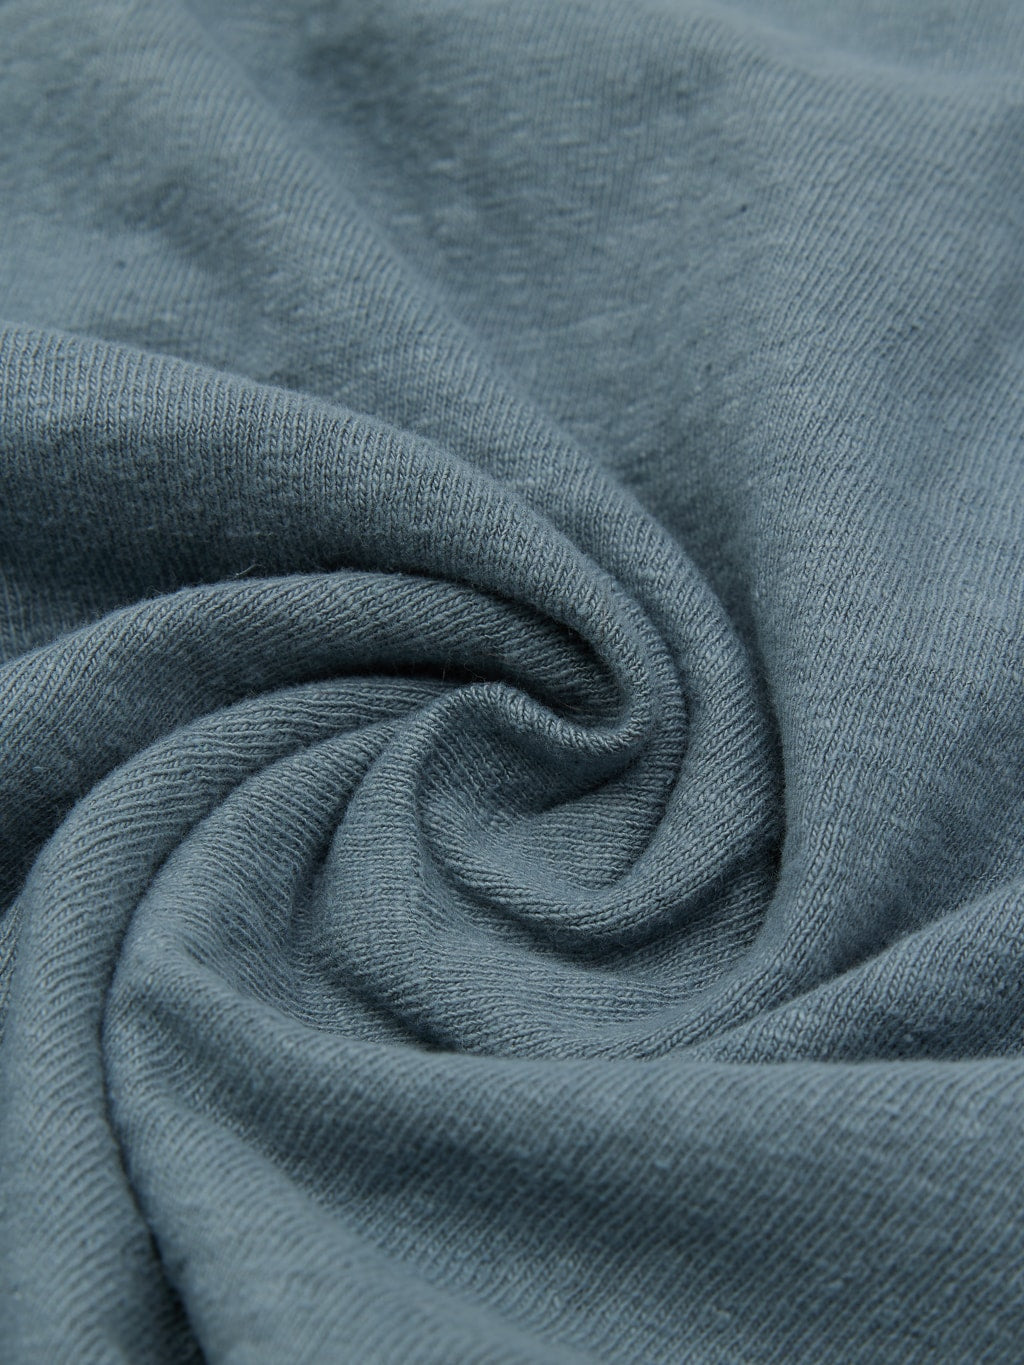 UES No 8 Slub Nep Short Sleeve Tshirt Grey texture